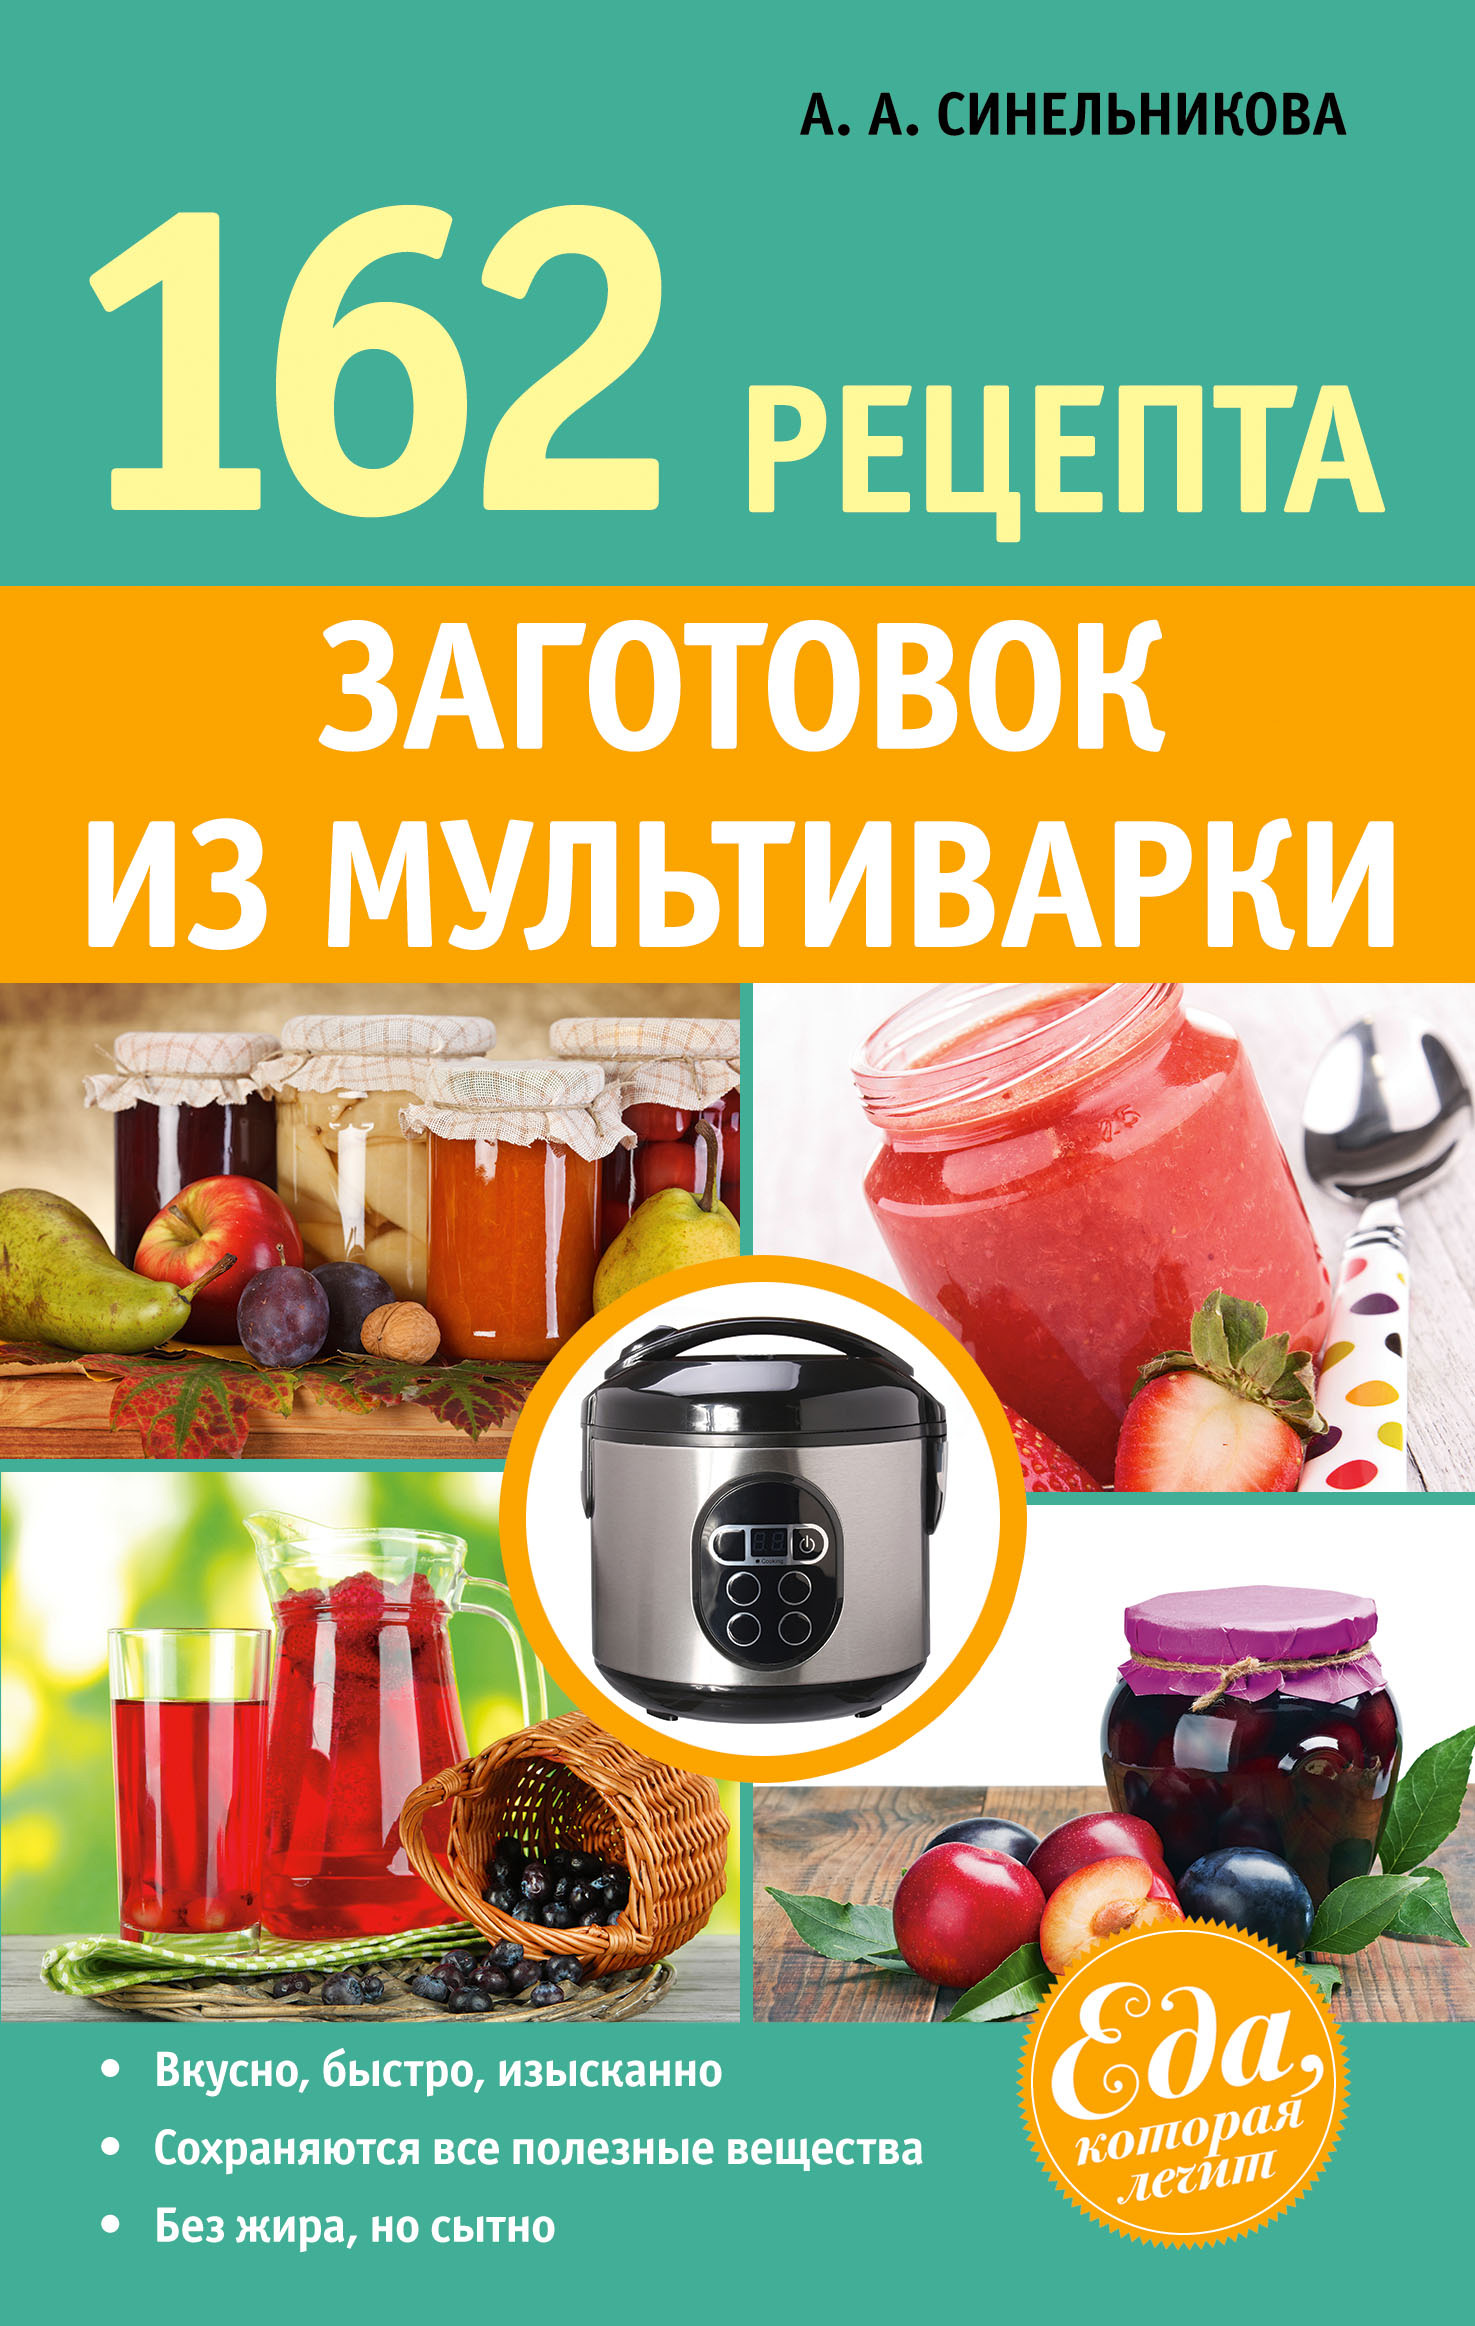 Книга 162 рецепта заготовок из мультиварки из серии , созданная А. Синельникова, может относится к жанру Кулинария. Стоимость электронной книги 162 рецепта заготовок из мультиварки с идентификатором 10697519 составляет 79.99 руб.